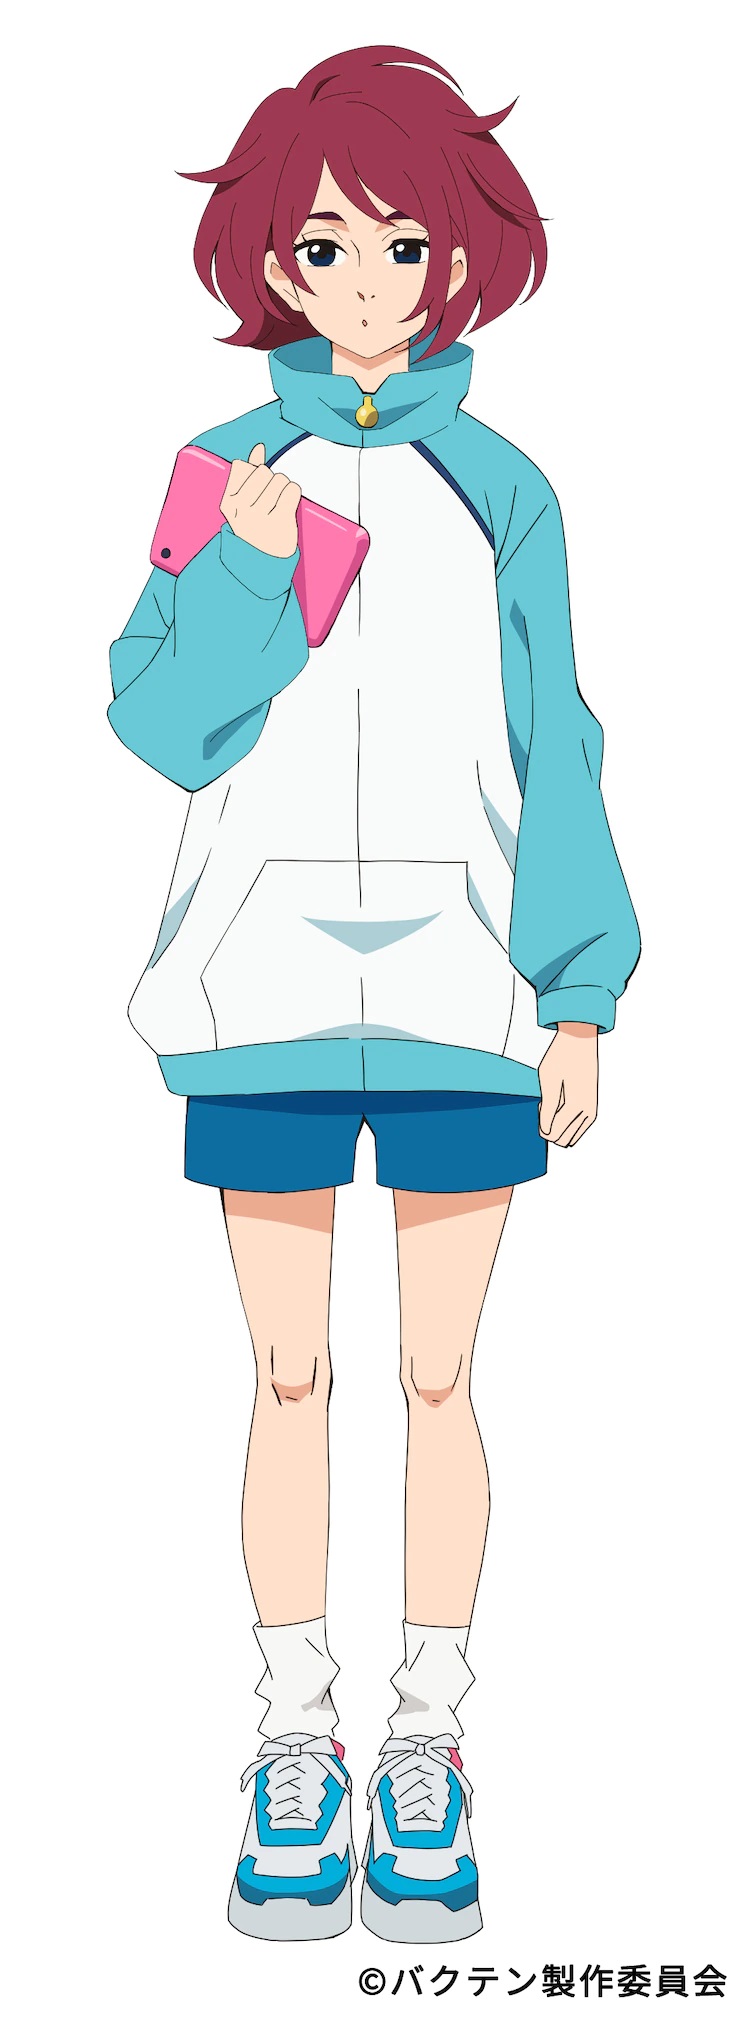 ¡¡Un escenario de carácter para Asawo Kurikoma, el gerente del club de gimnasia rítmica masculina de Soshukan High School del próximo Bakuten !!  Anime de TV.  Asawo es una chica de cabello color burdeos y ojos azul oscuro, vestida con ropa deportiva y sosteniendo una tablet PC rosa, con una expresión impasible en su rostro.